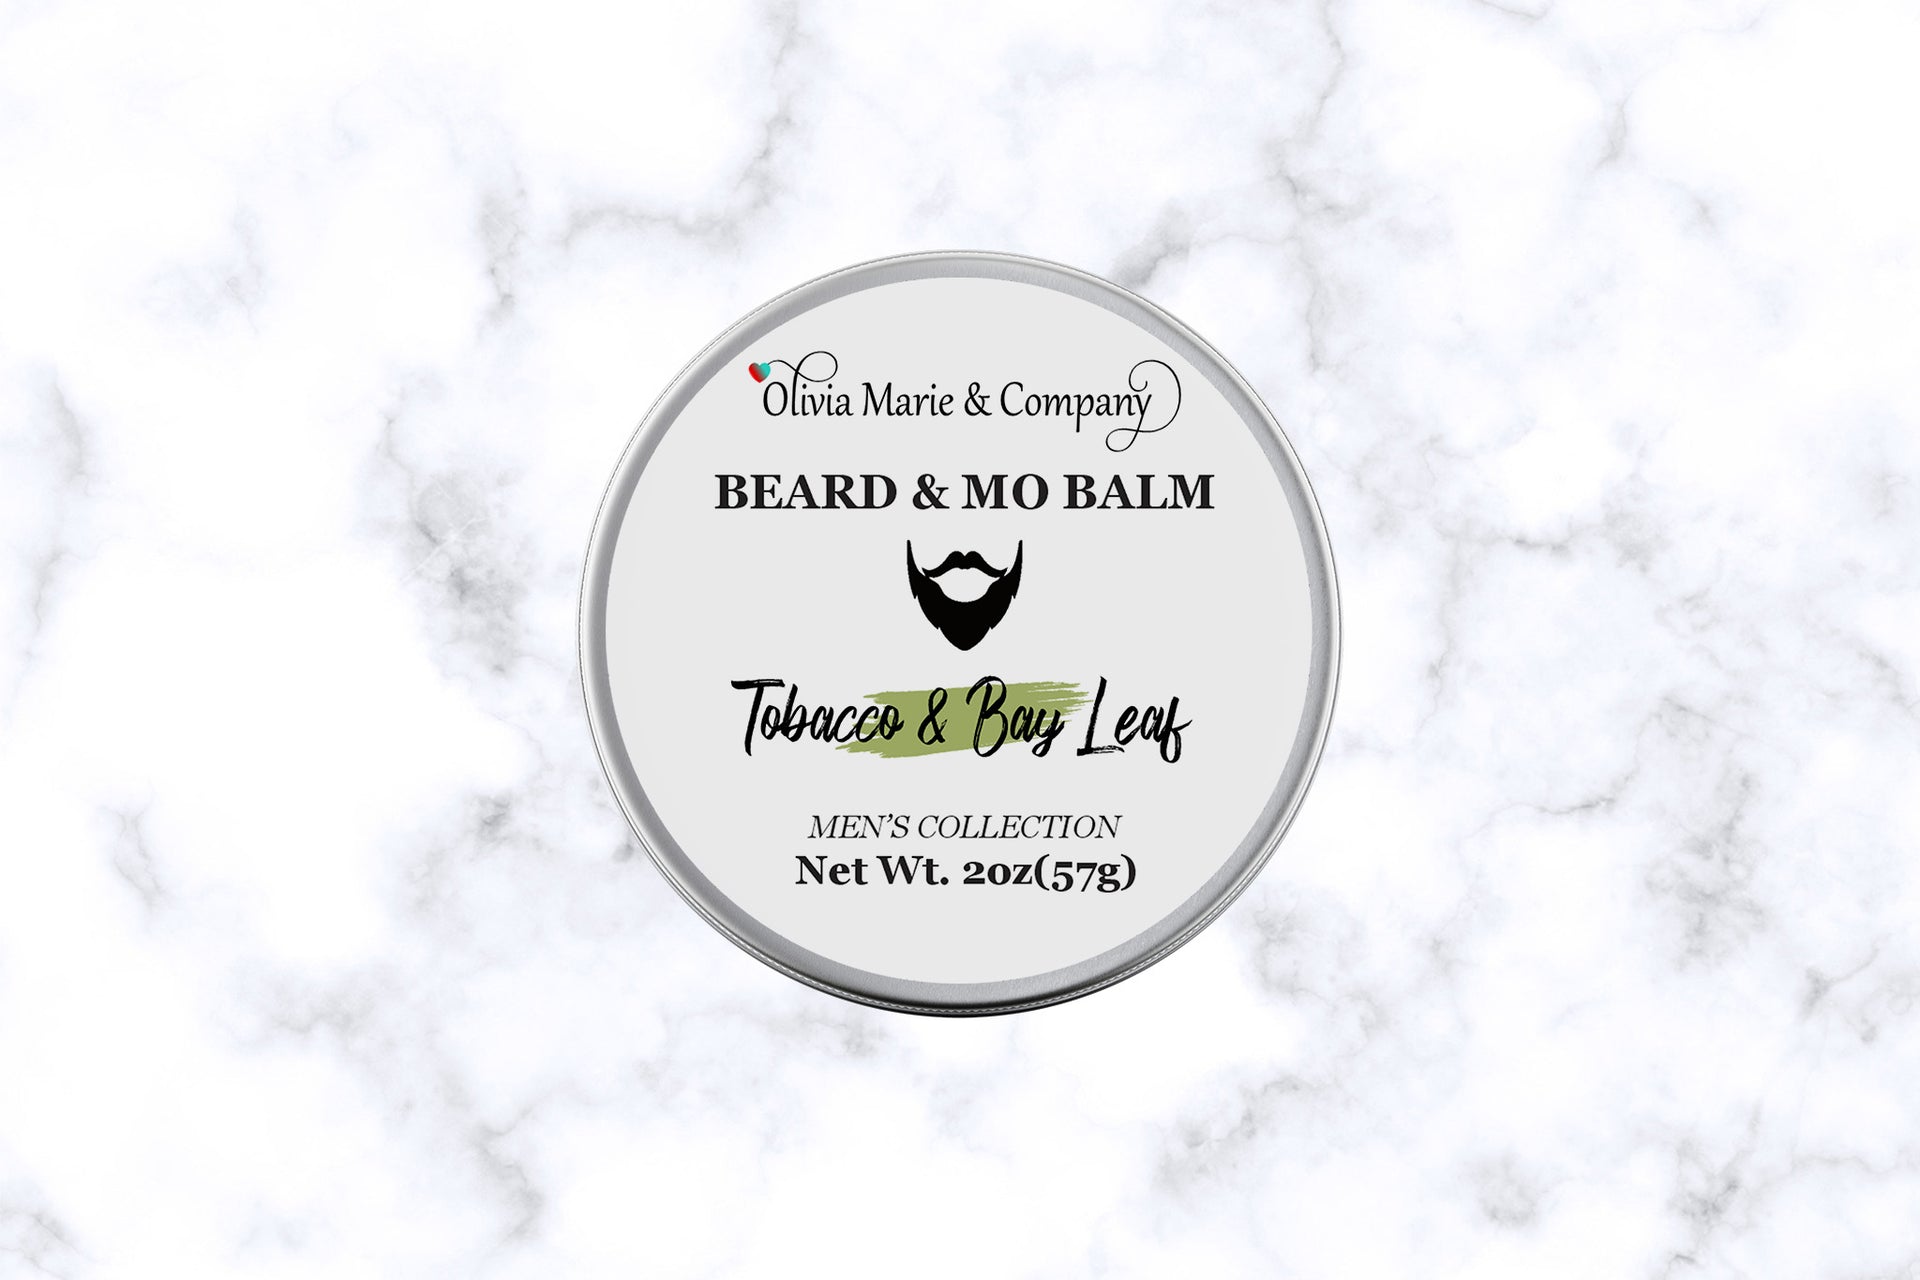 Tobacco & Bay Leaf Beard Oil